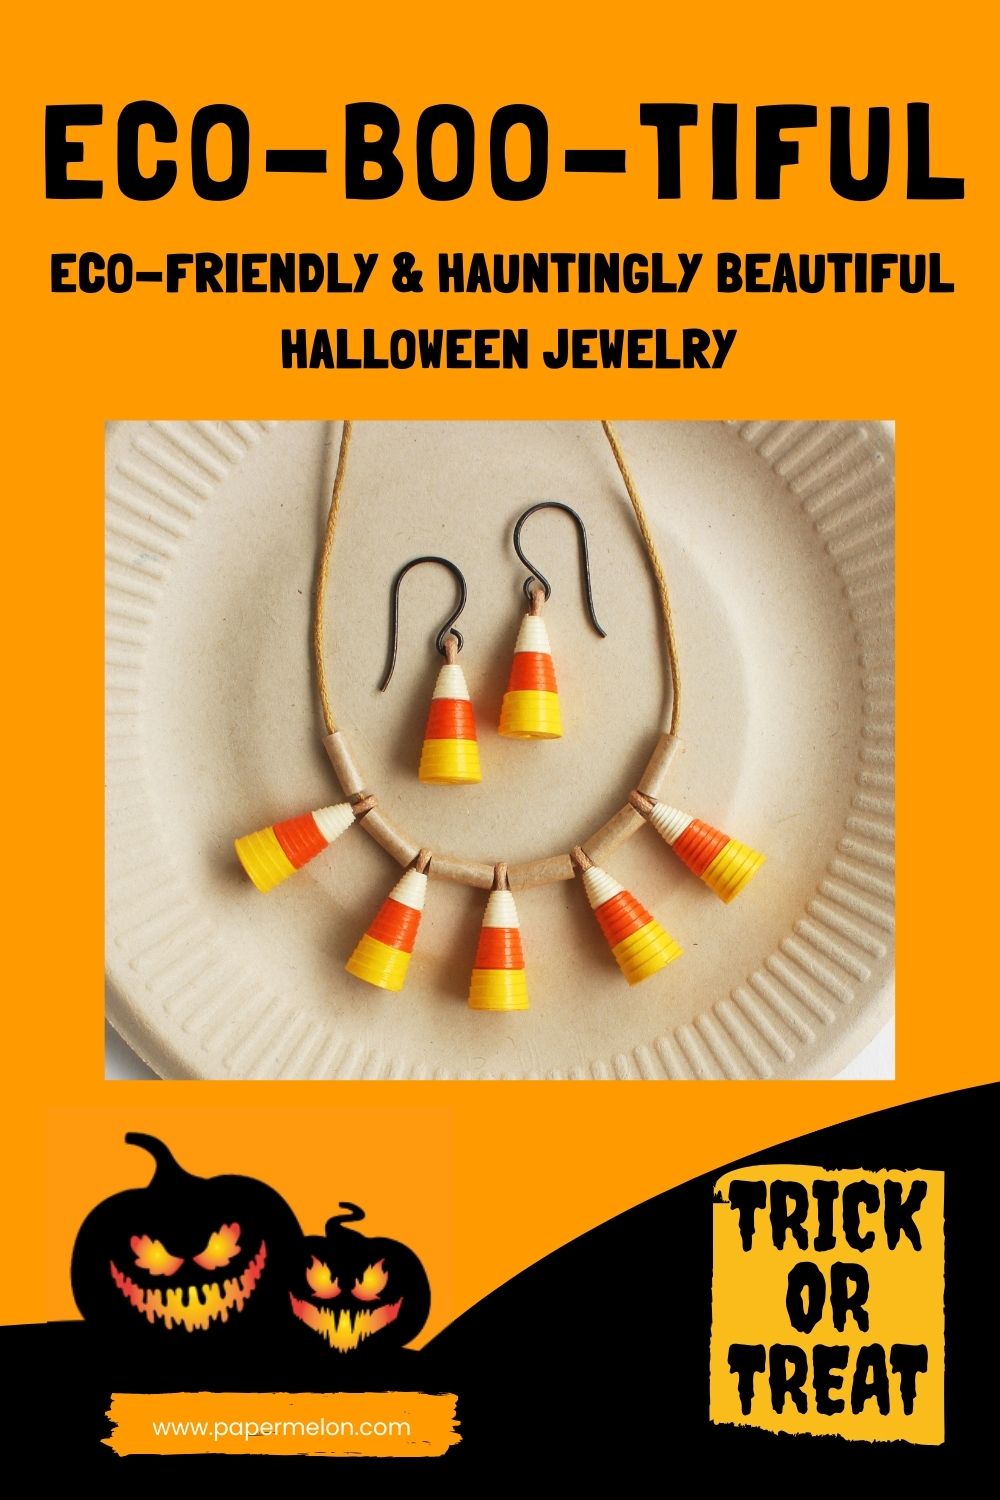 eco-friendly halloween jewelry